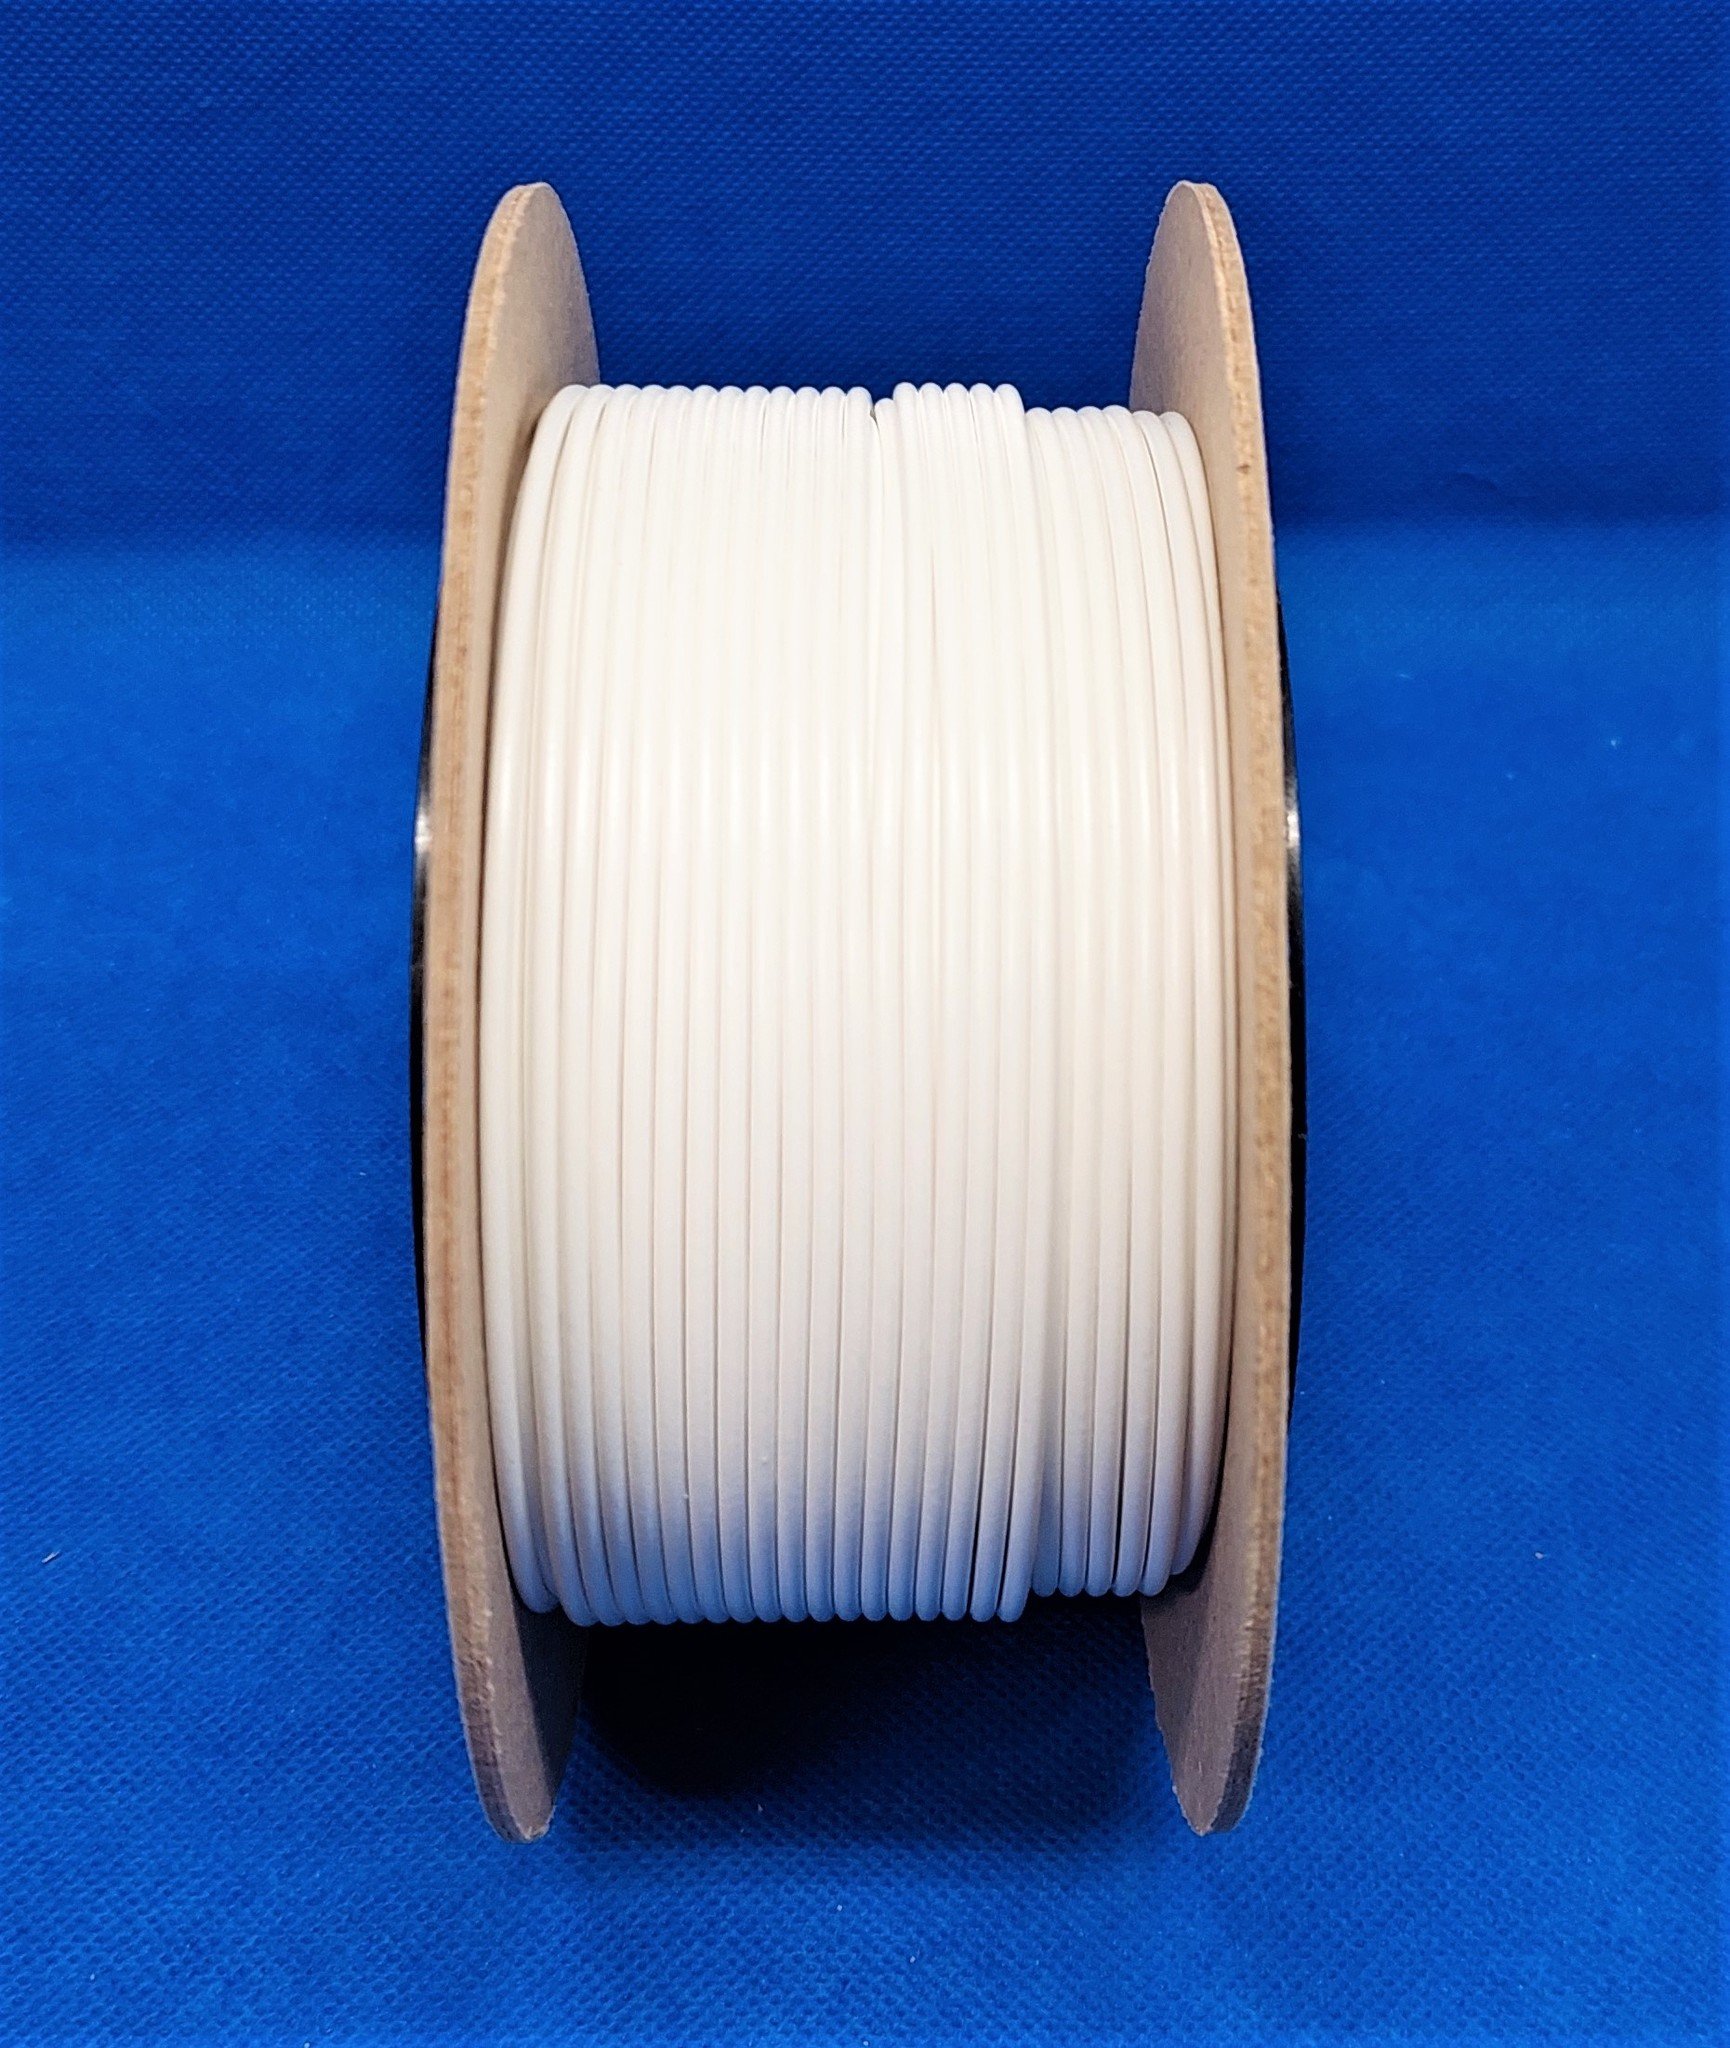 FLRY-B kabel 1,5mm - voertuigkabel - 50 meter - kleur Wit 